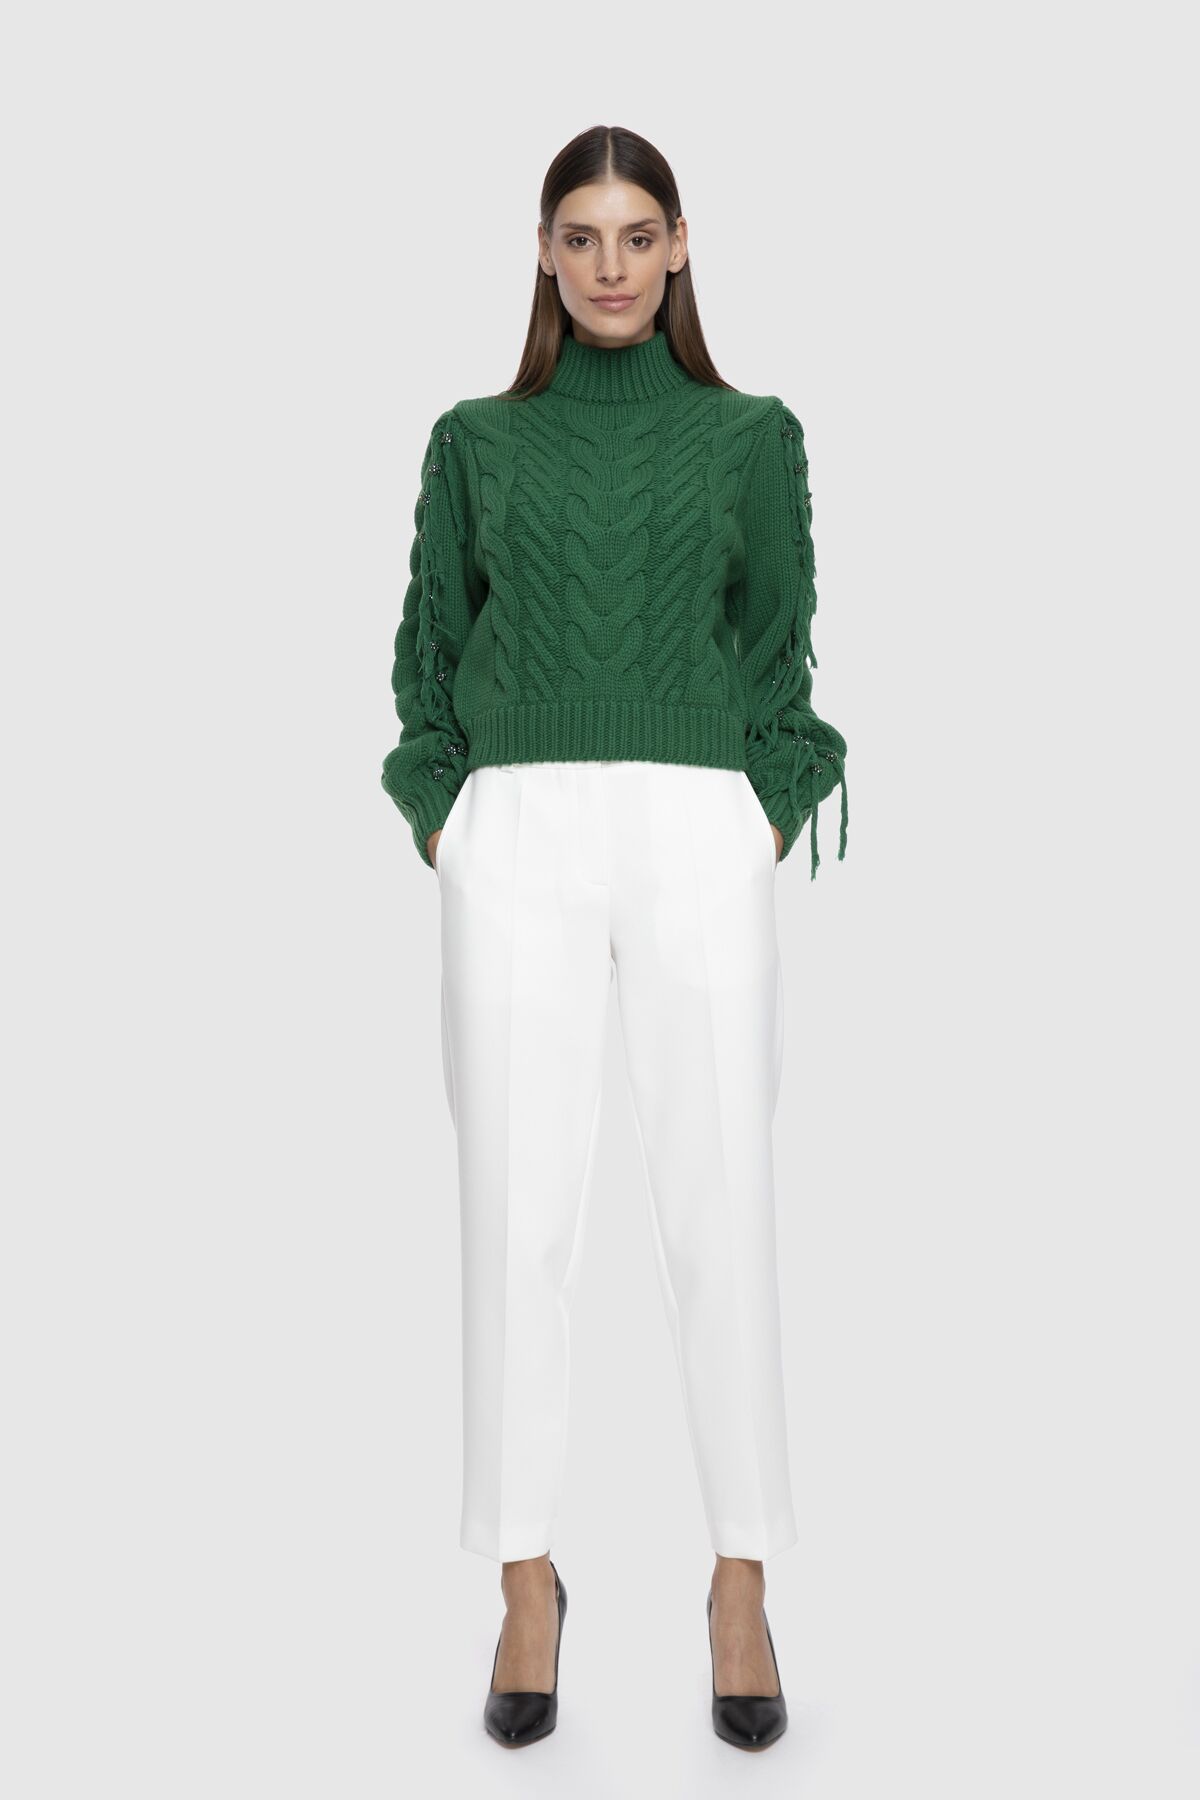  GIZIA - Embroidered Tassel Detail Half Turtleneck Green Crop Sweater